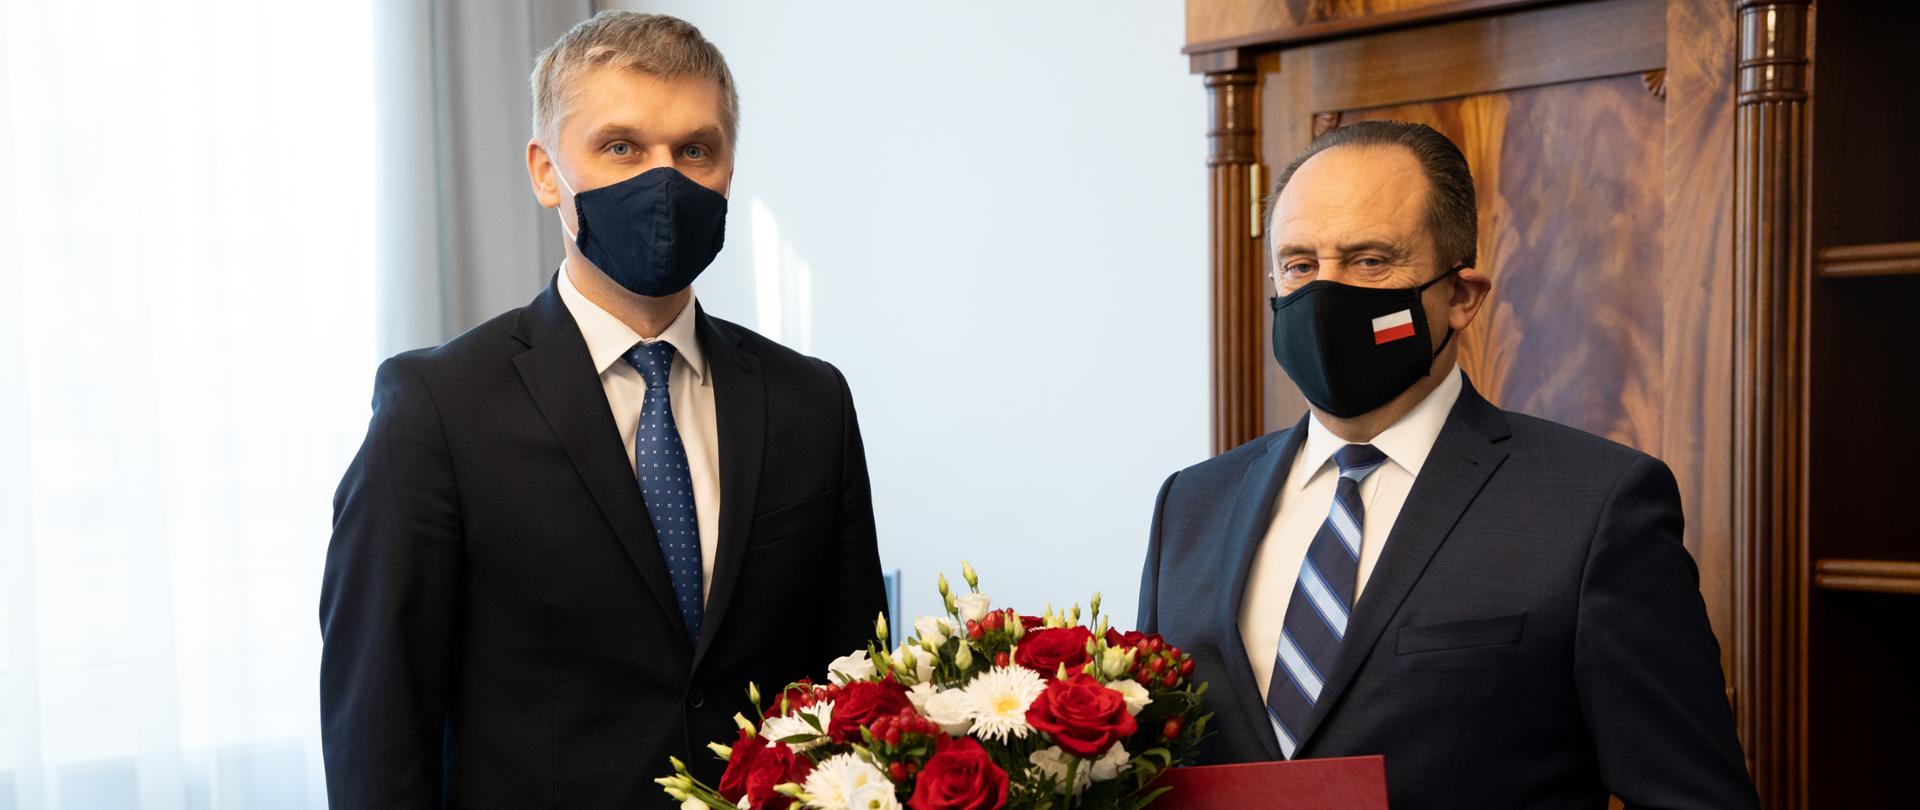 Obok siebie stoją Piotr Nowak i Andrzej Gut-Mostowy, który trzyma w ręku teczkę i bukiet biało-czerwonych kwiatów.